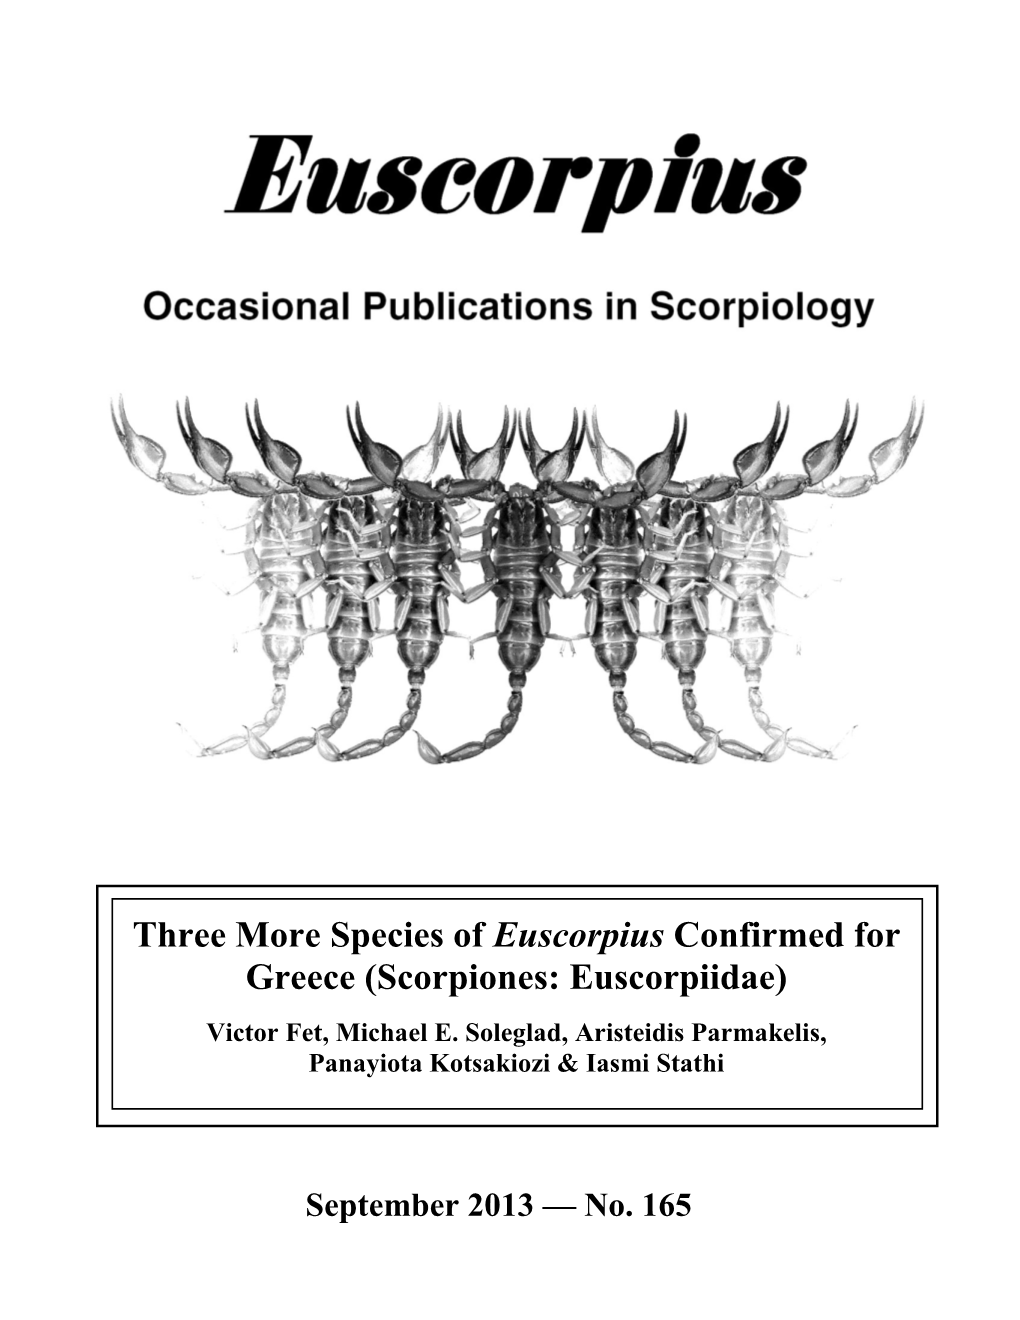 Scorpiones: Euscorpiidae)